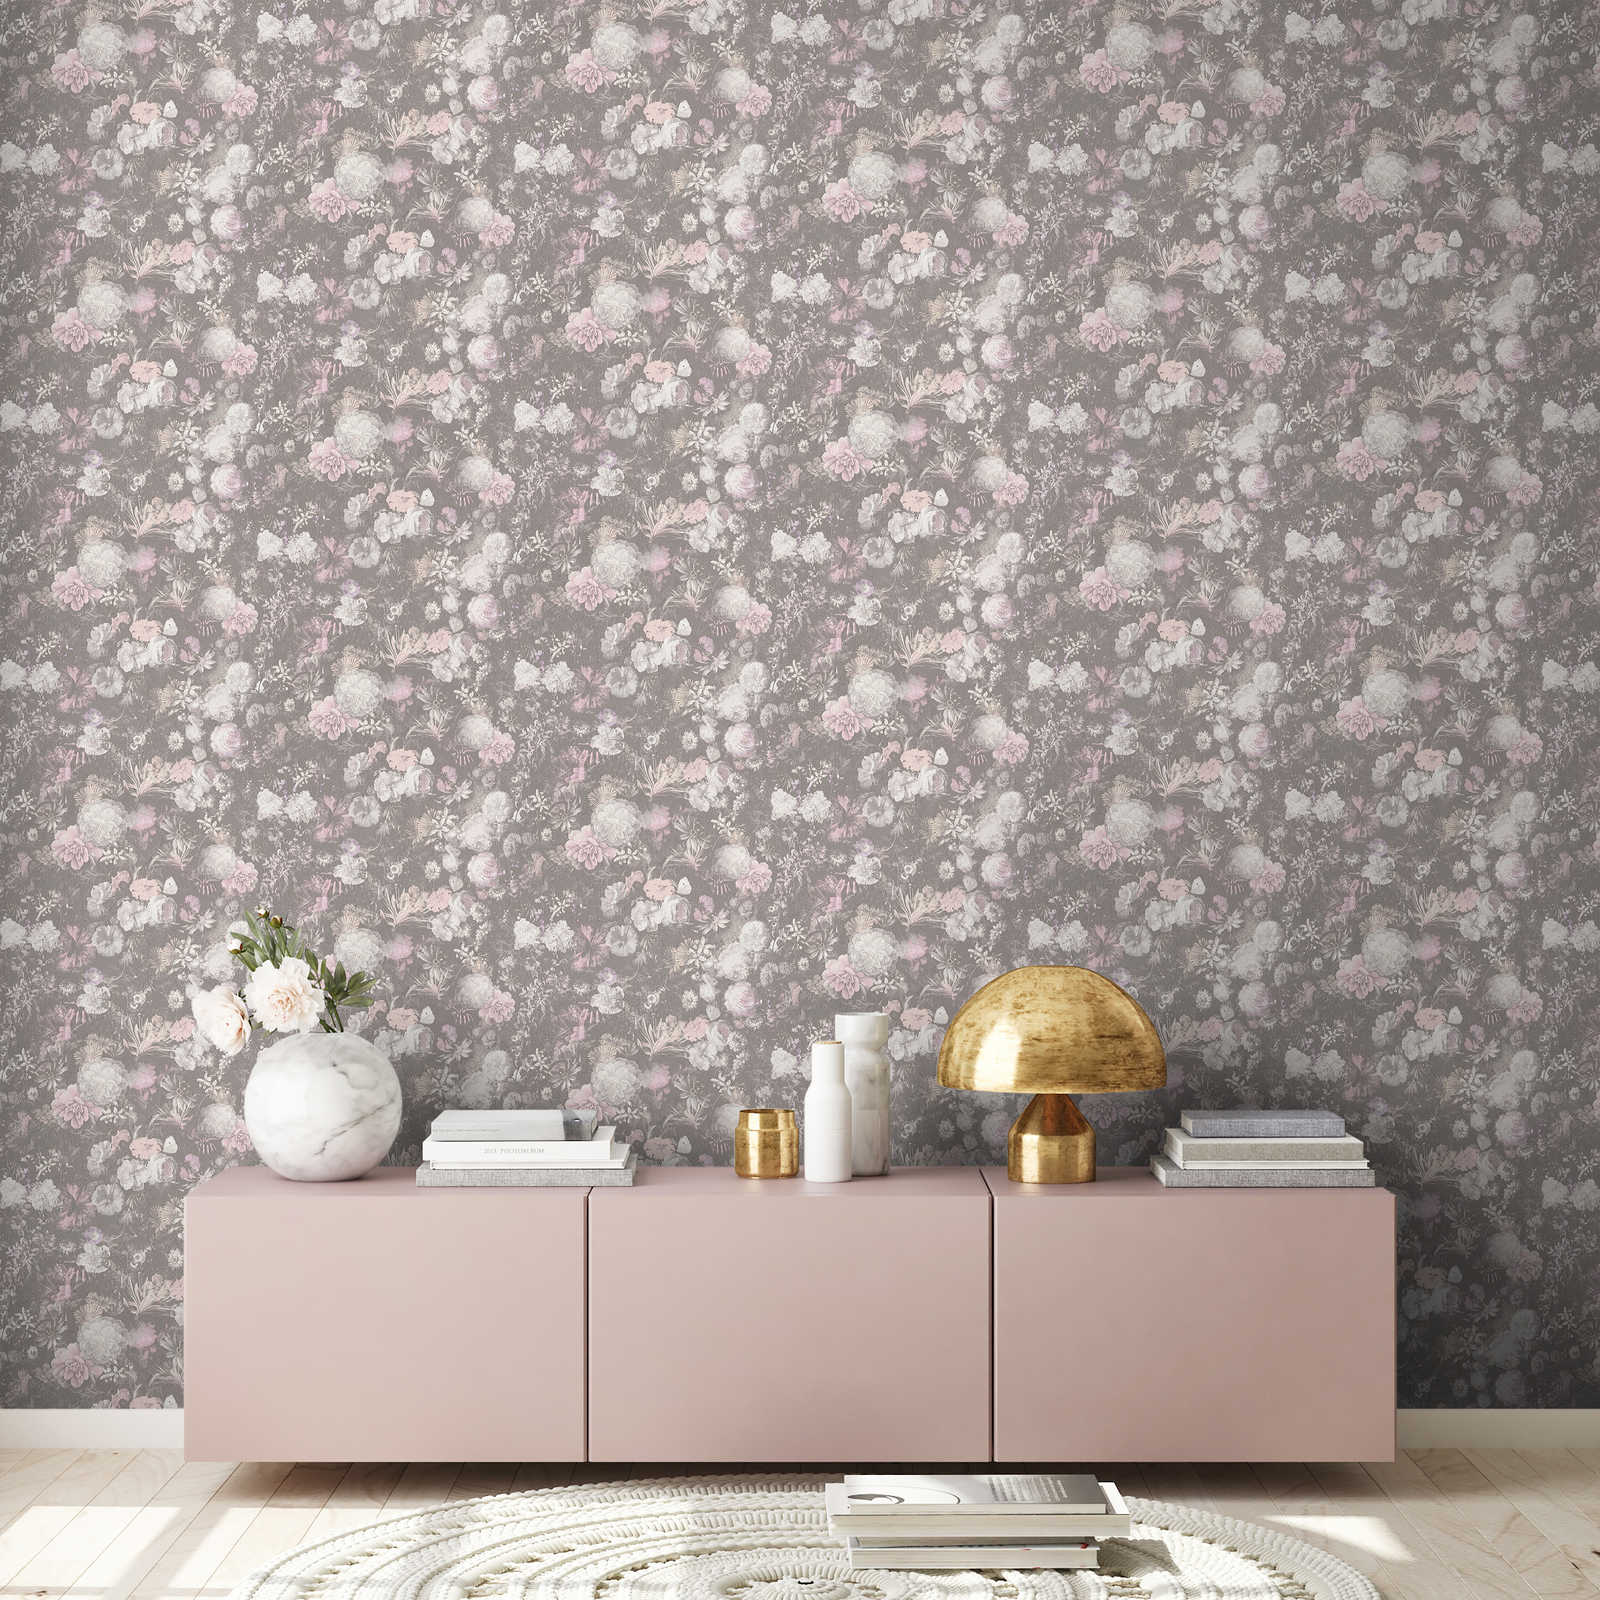             Floral wallpaper pink & grey in vintage design
        